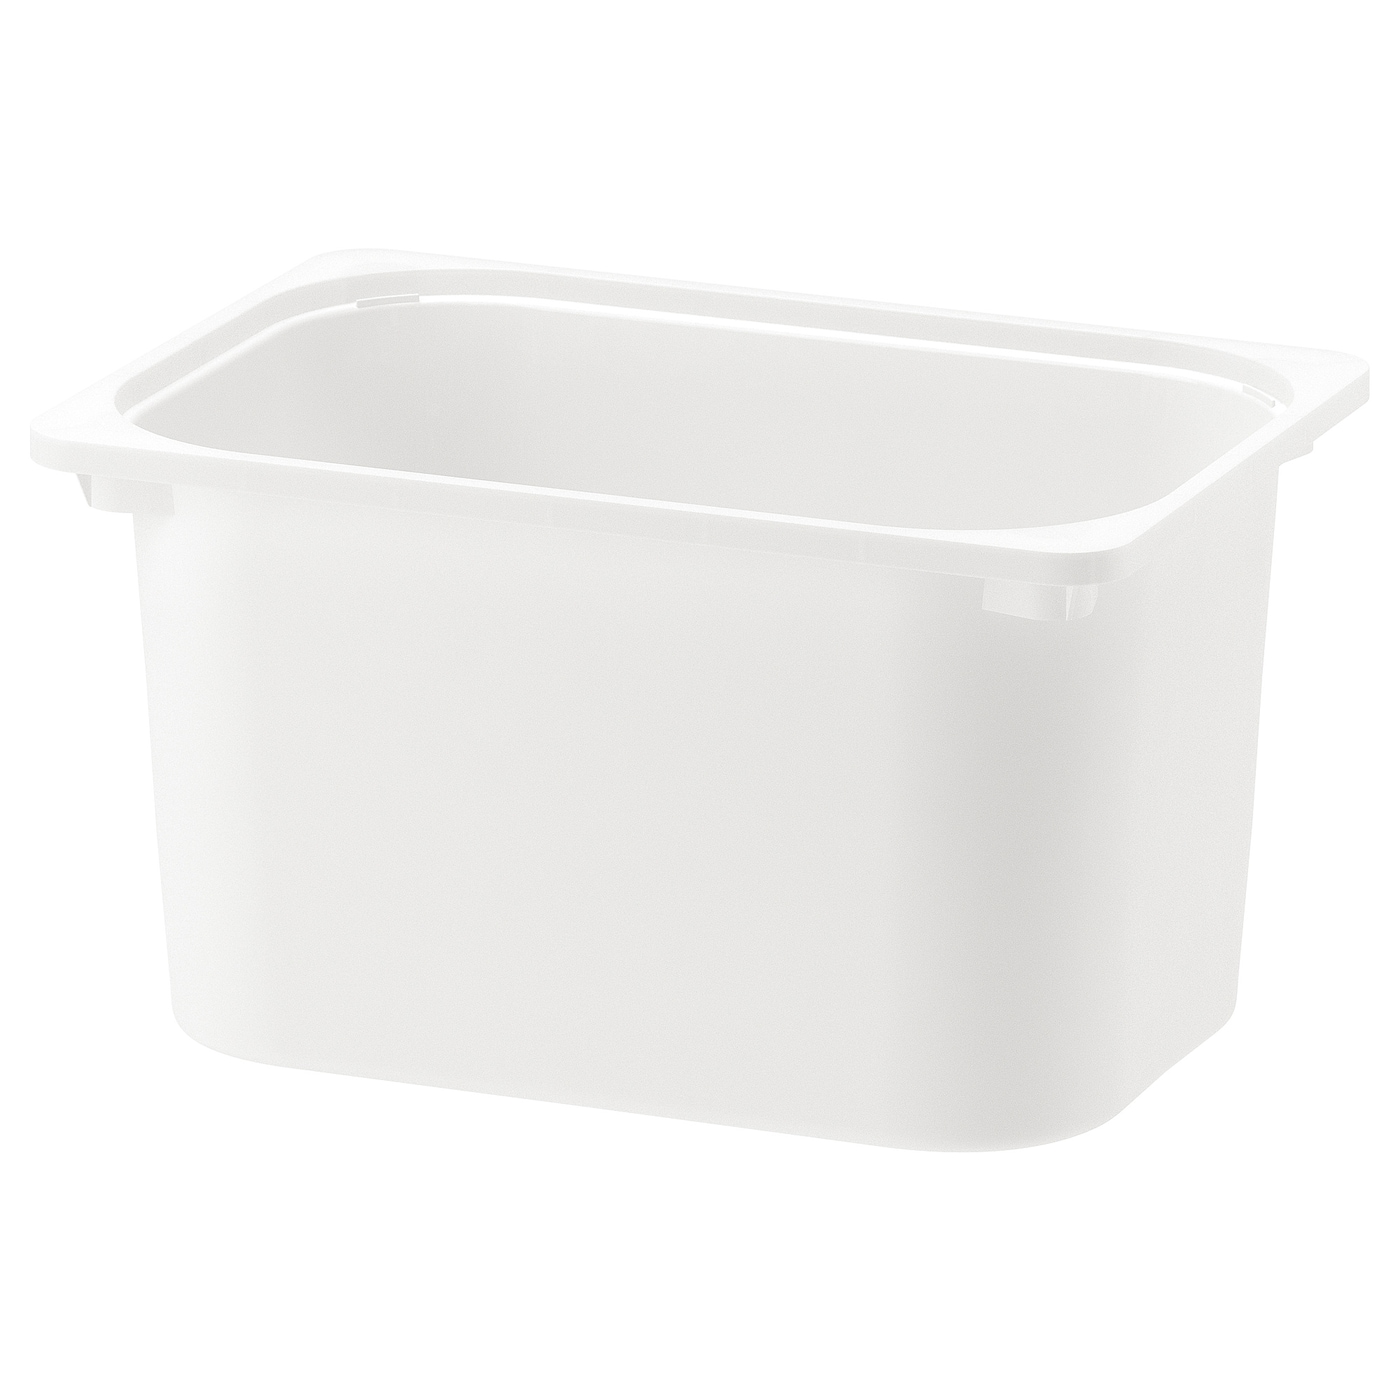 Ящик для хранения игрушек - TROFAST IKEA/ ТРУФАСТ ИКЕА, 42x30x23 см, белый